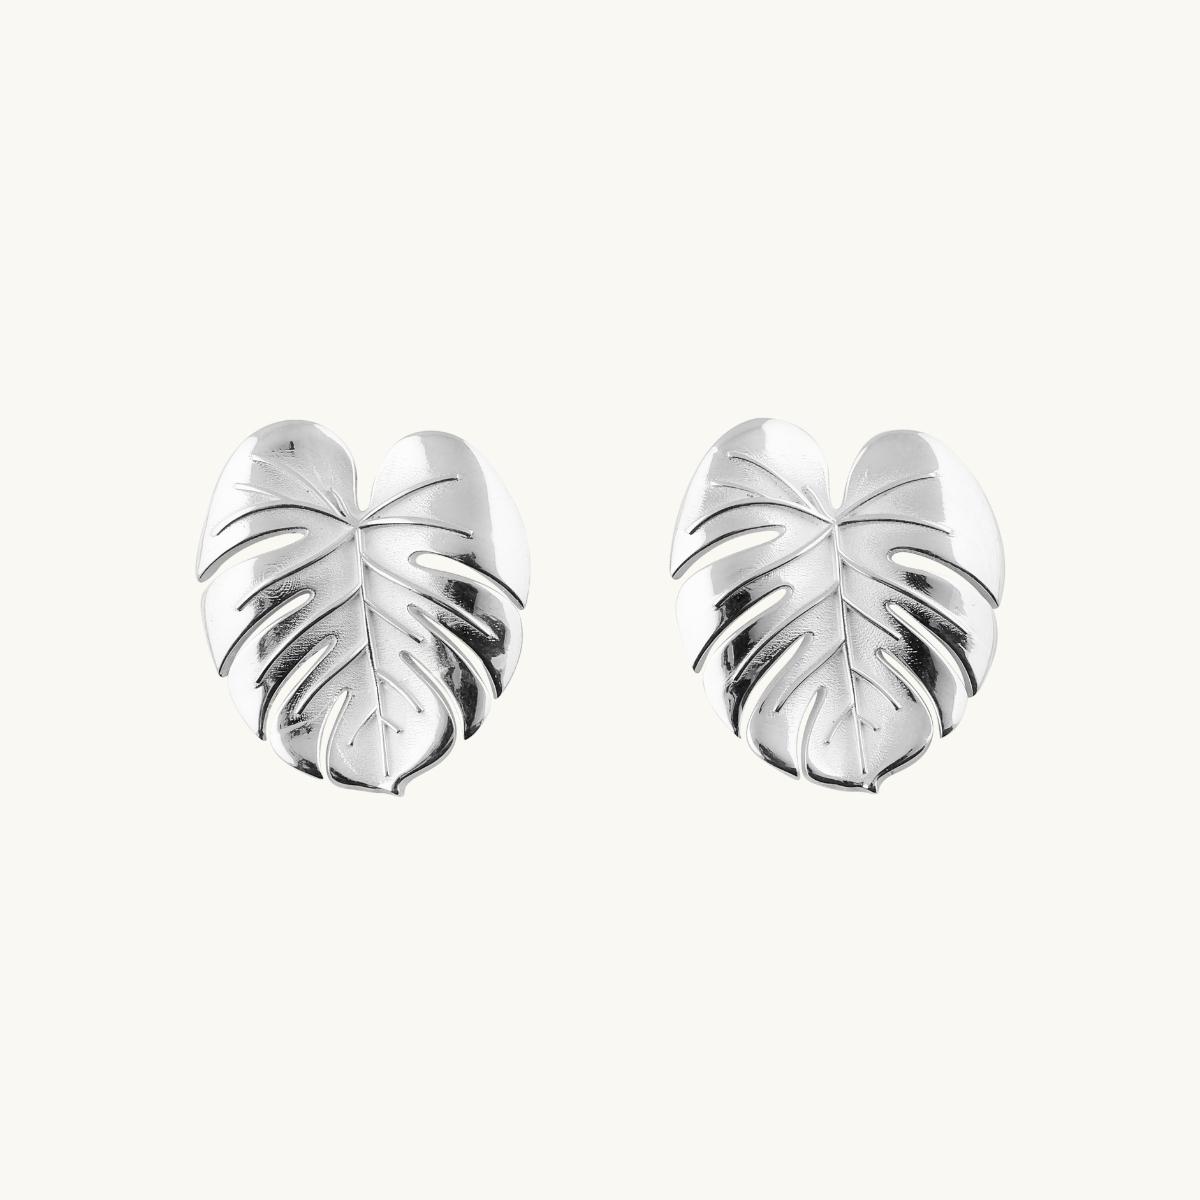 Earrings in shape of palm leafs in sterling silver